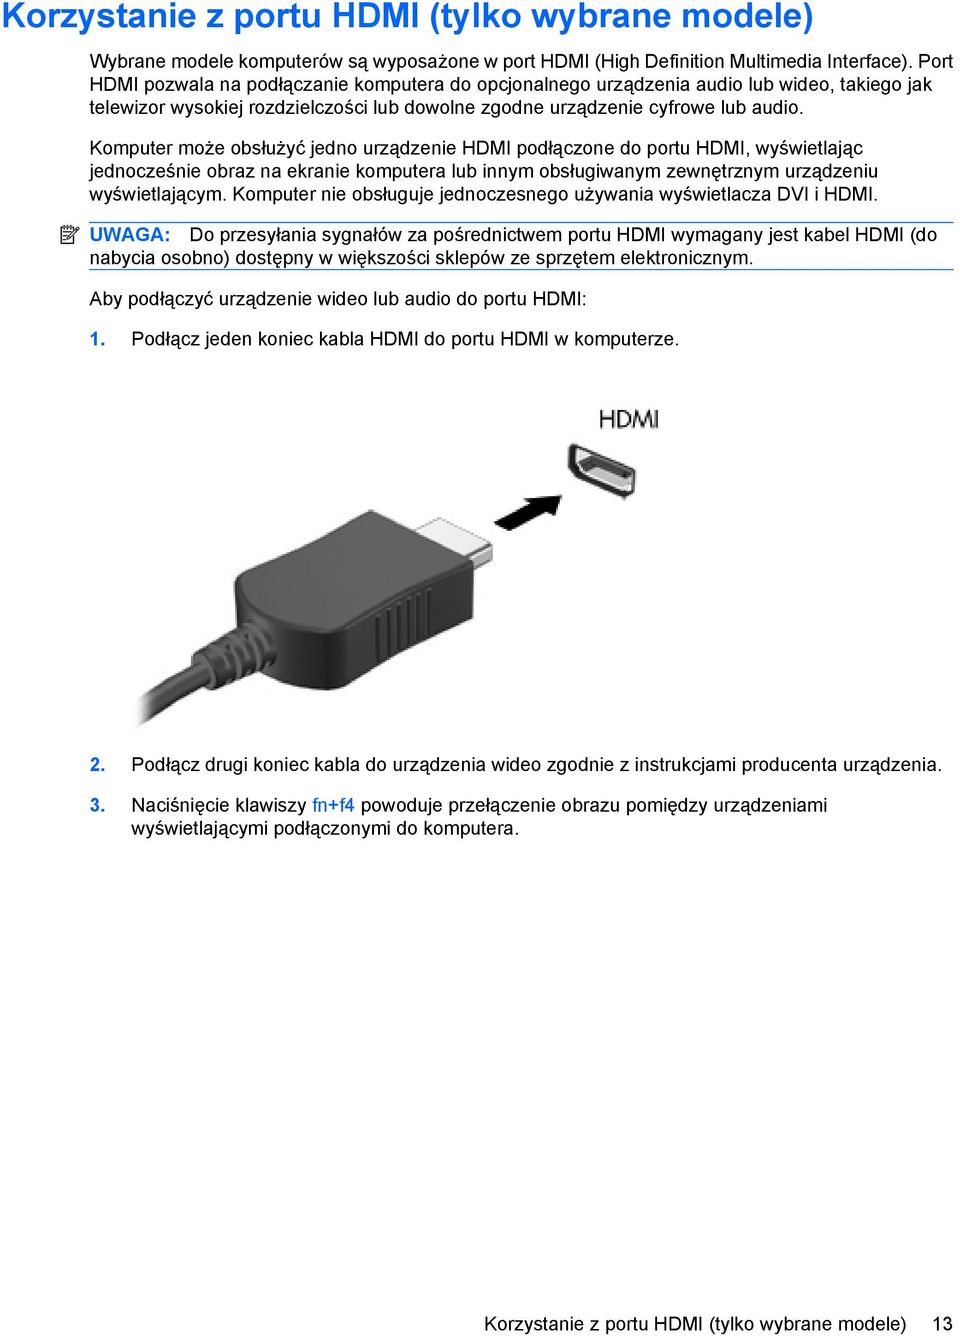 Komputer może obsłużyć jedno urządzenie HDMI podłączone do portu HDMI, wyświetlając jednocześnie obraz na ekranie komputera lub innym obsługiwanym zewnętrznym urządzeniu wyświetlającym.